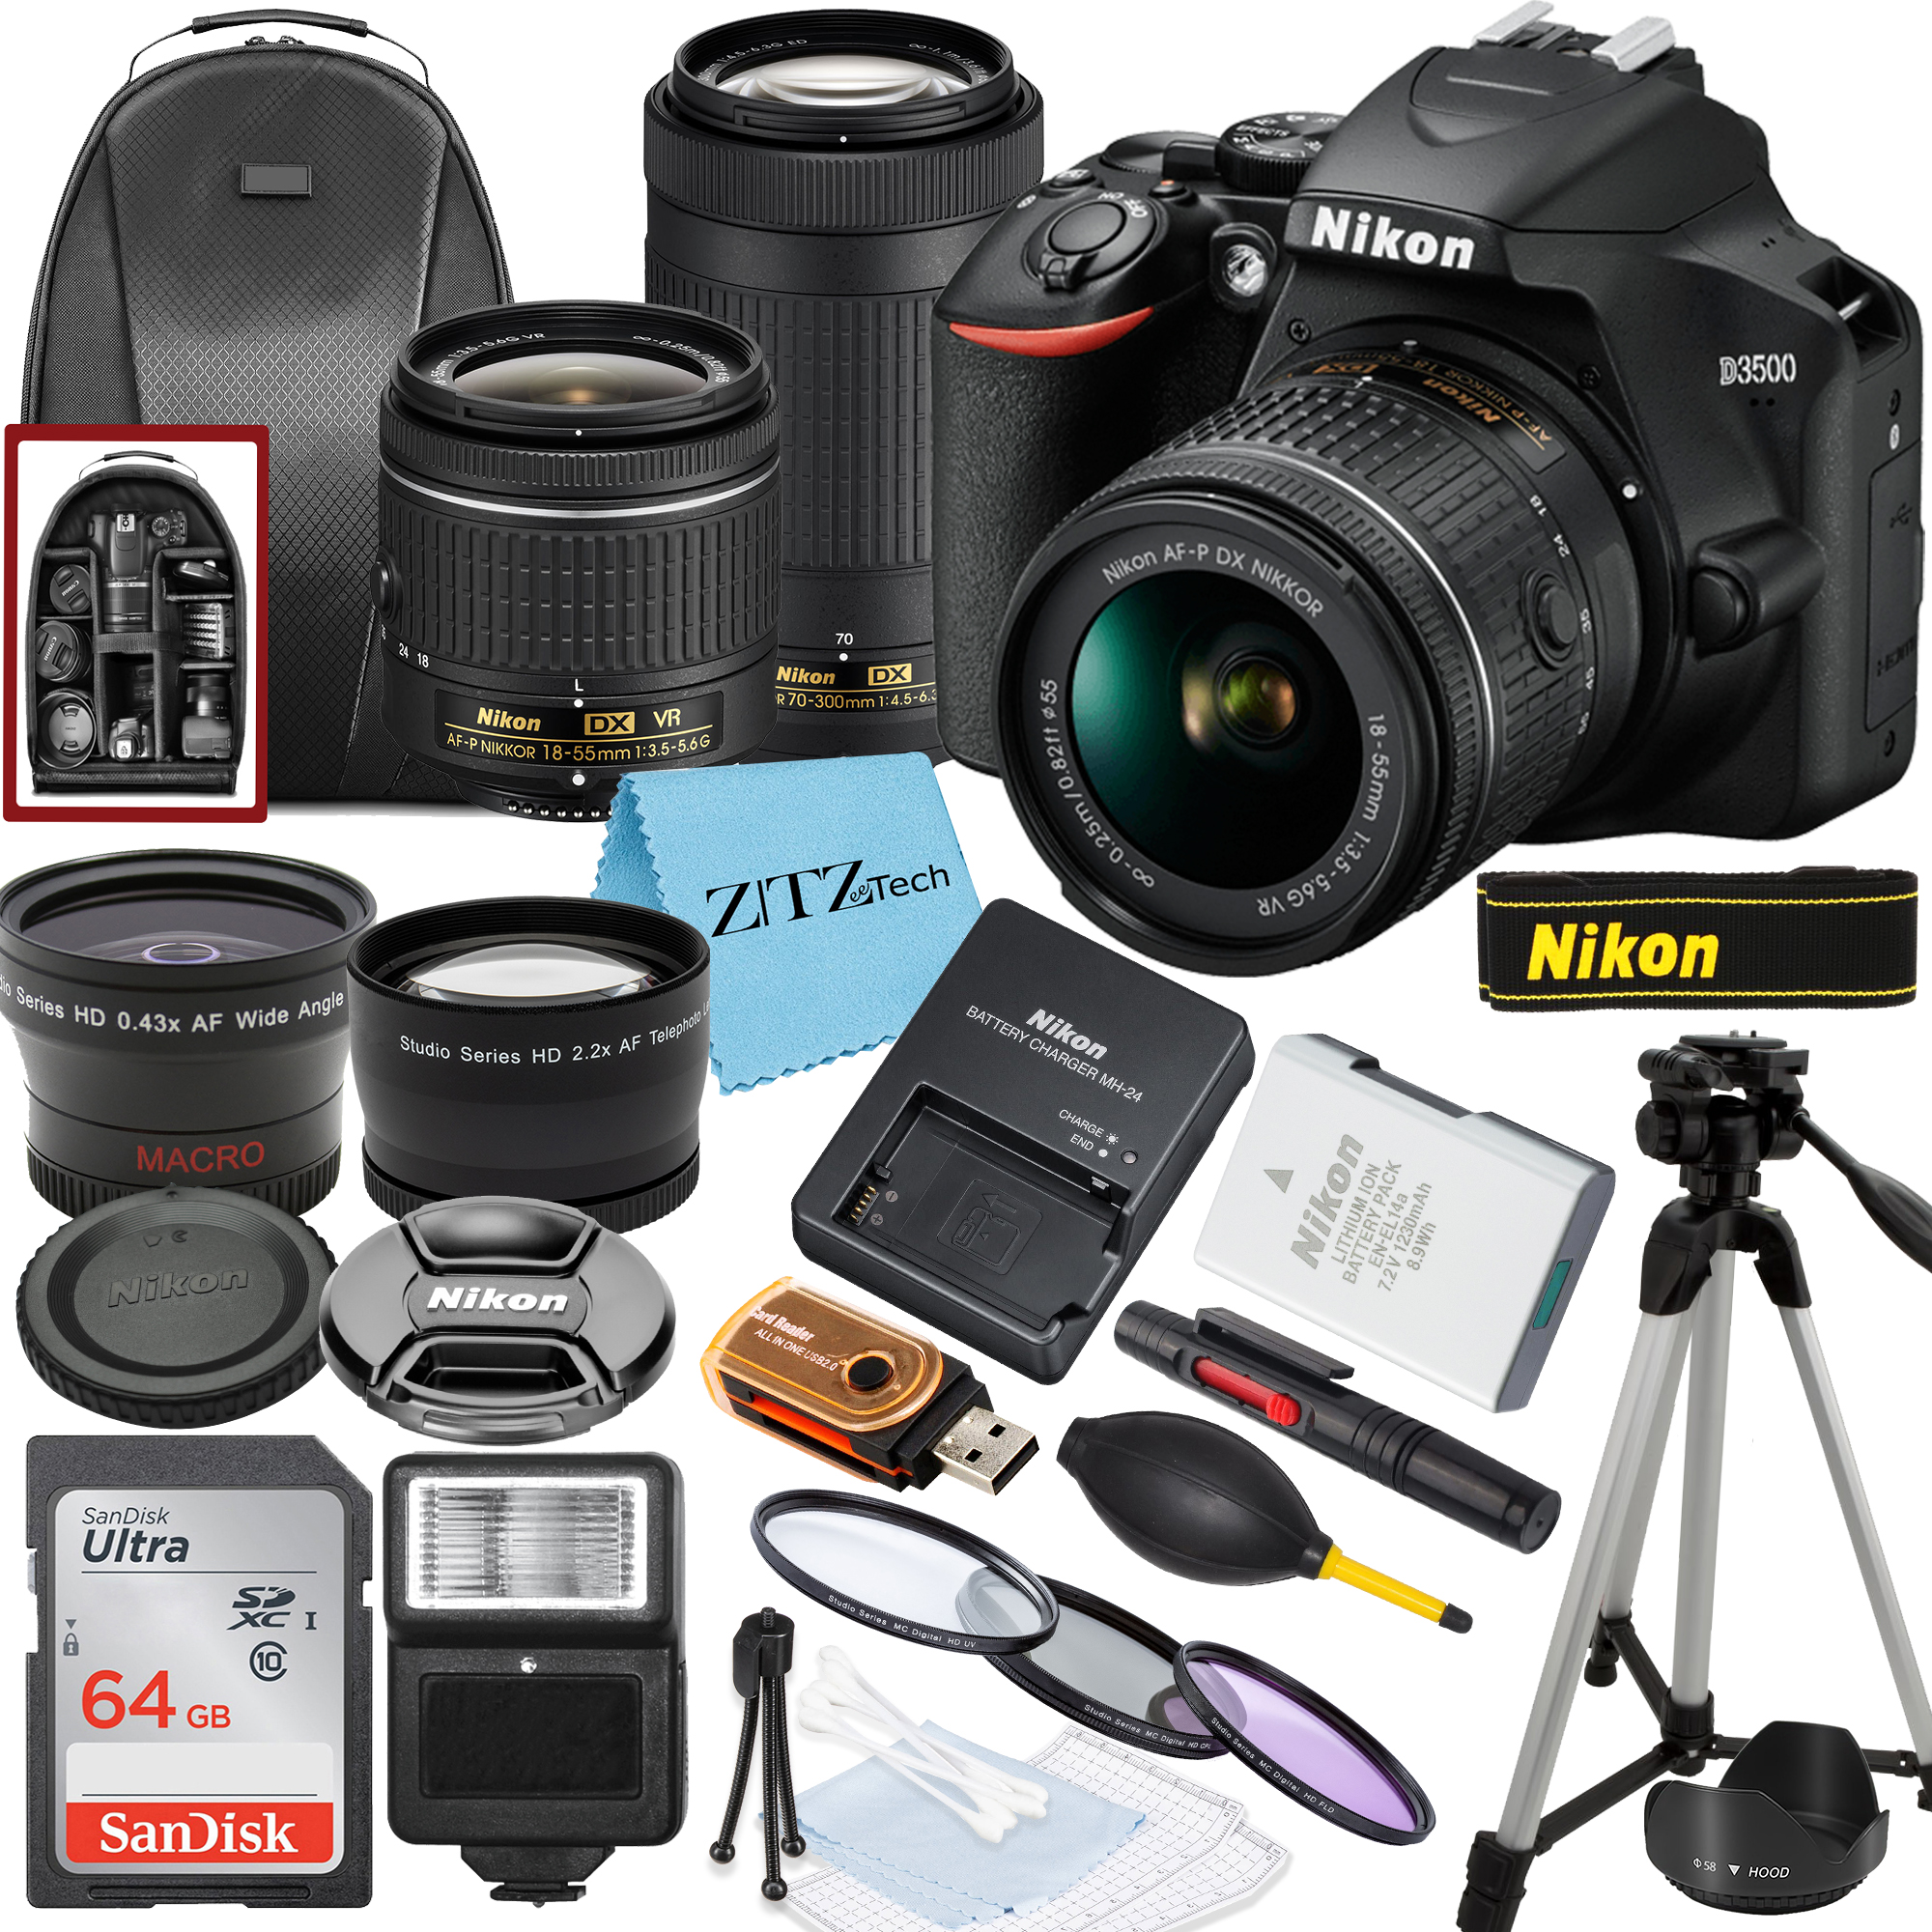 Nikon D3500 DSLR Camera with NIKKOR 18-55mm, 70-300mm Lens, SanDisk 64GB Memory, Tripod, Backpack and ZeeTech Bundle